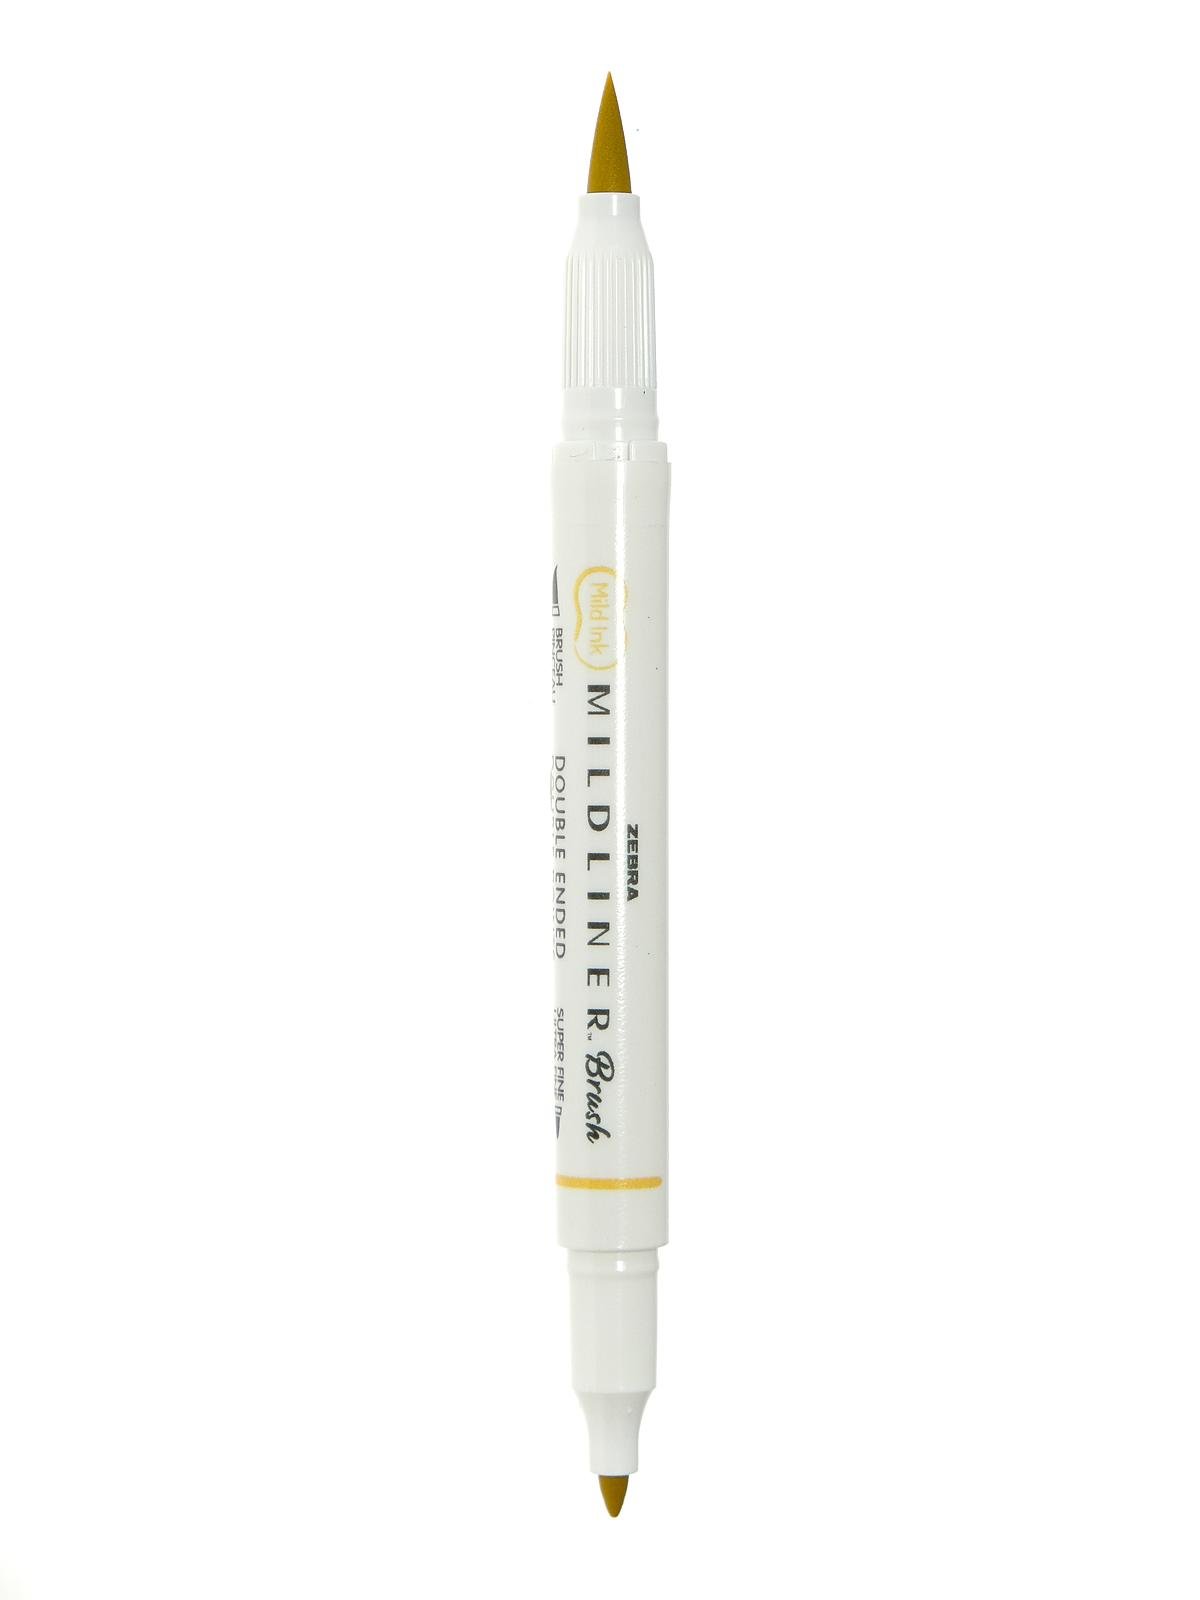 Zebra Pen Mildliner Brush Marker, Double Ended Brush and Fine Tip